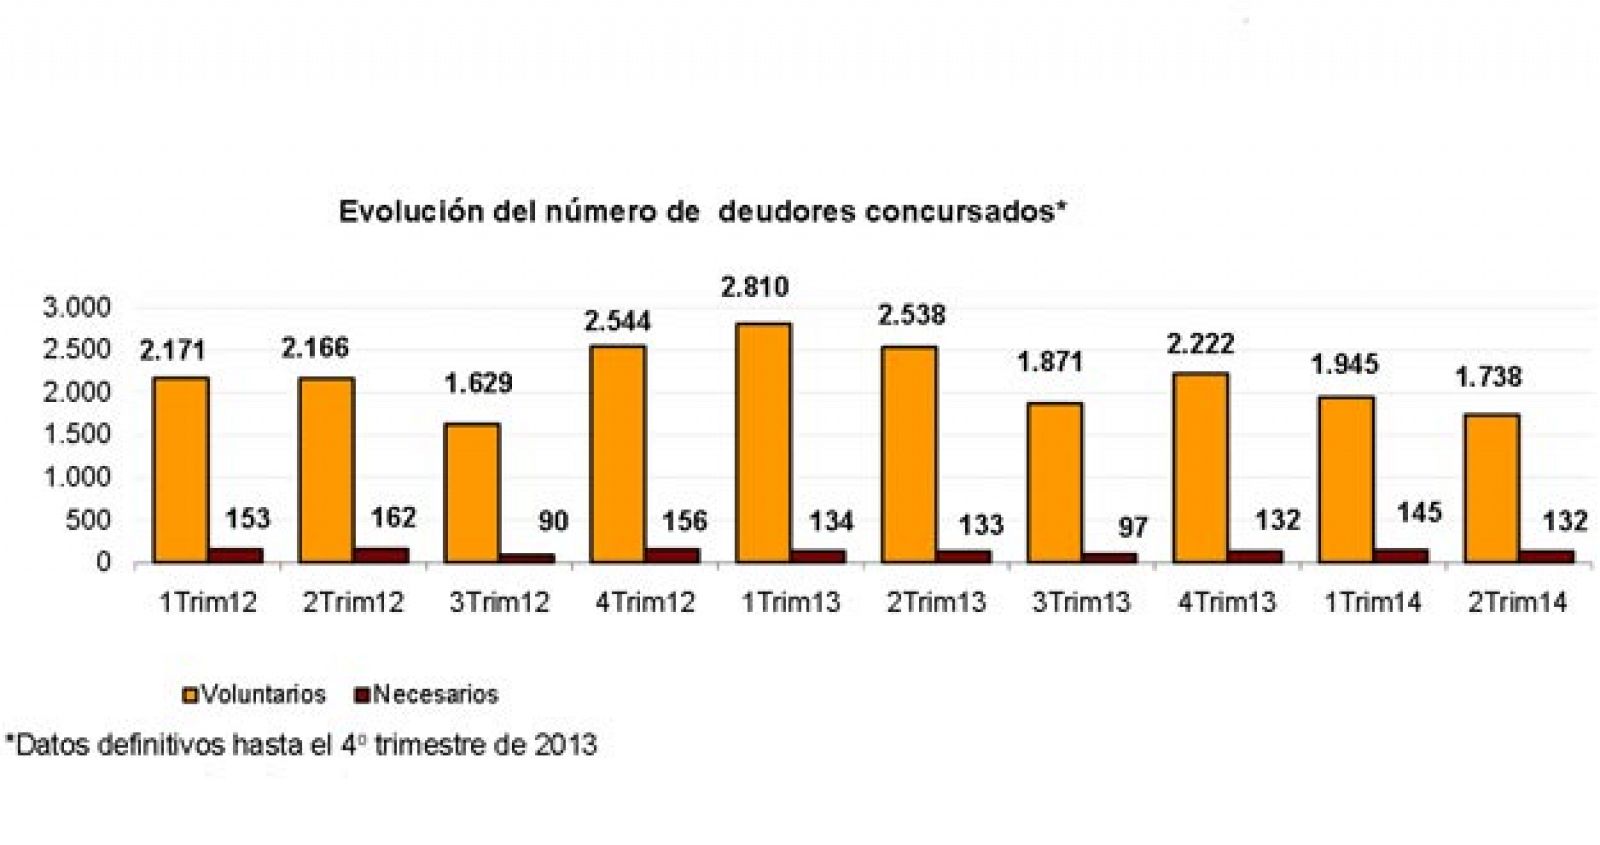 Evolución del número de deudores concursados desde el primer trimestre de 2012